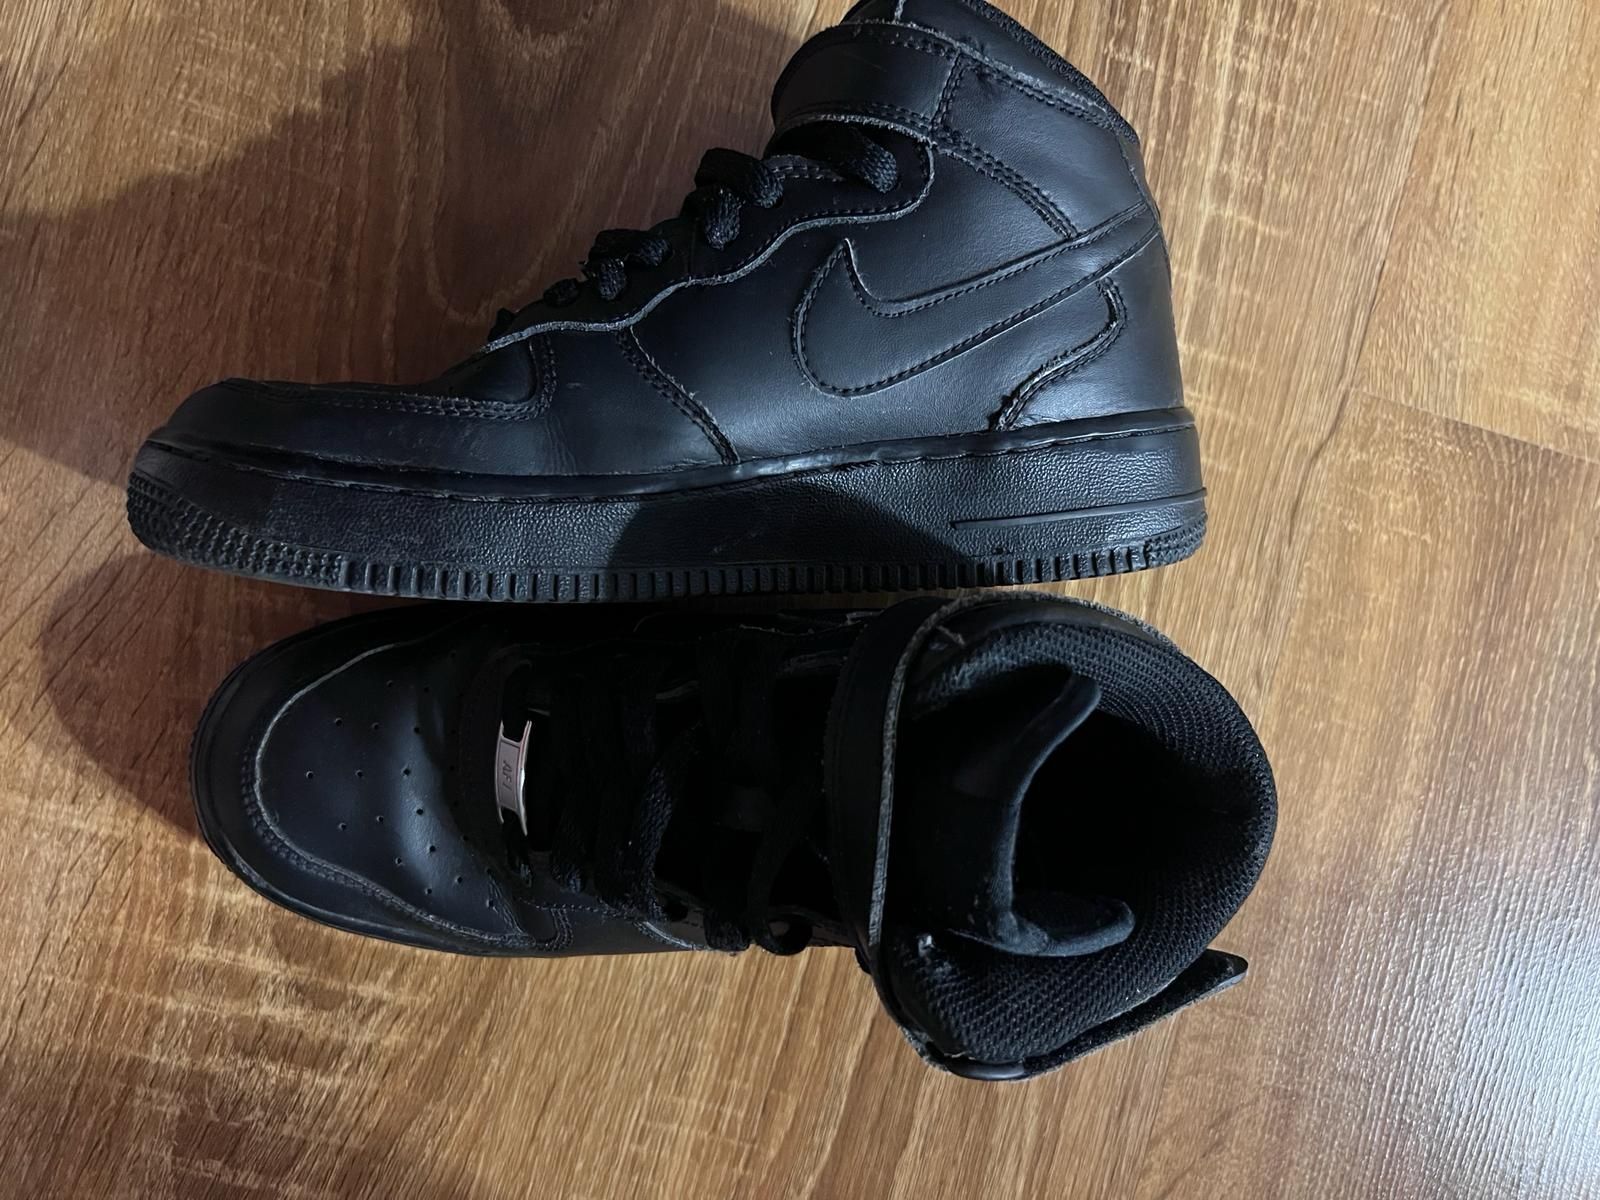 Black Nike Air Force 1